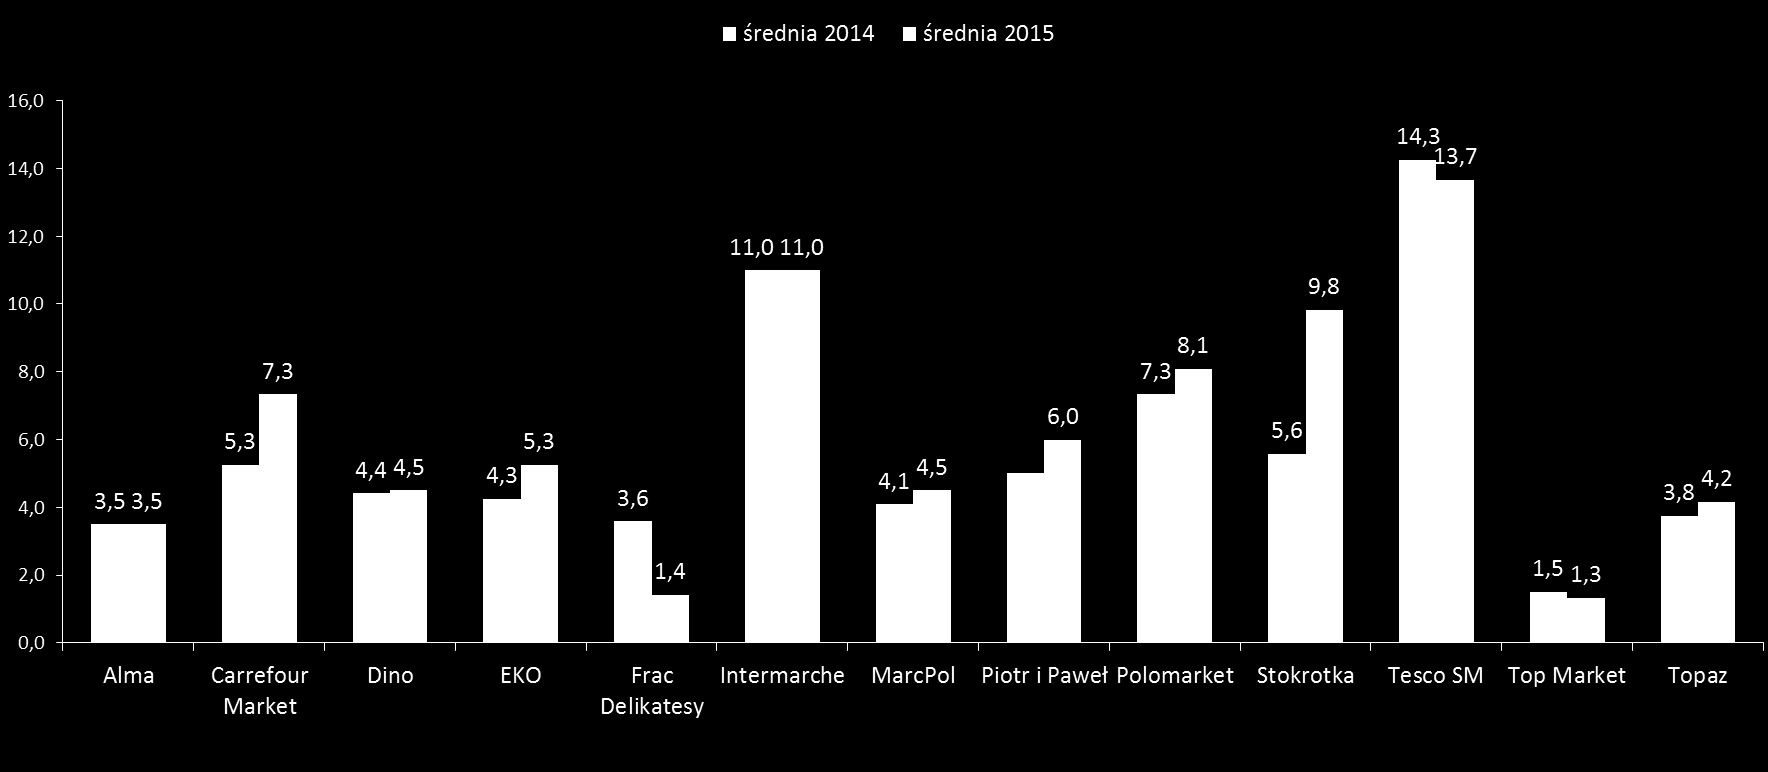 Charakterystyka gazetek 2015 vs 2014 Średnia liczba gazetek w m-cu Największą średnią liczbę gazetek w miesiącu wydaje Tesco SM.